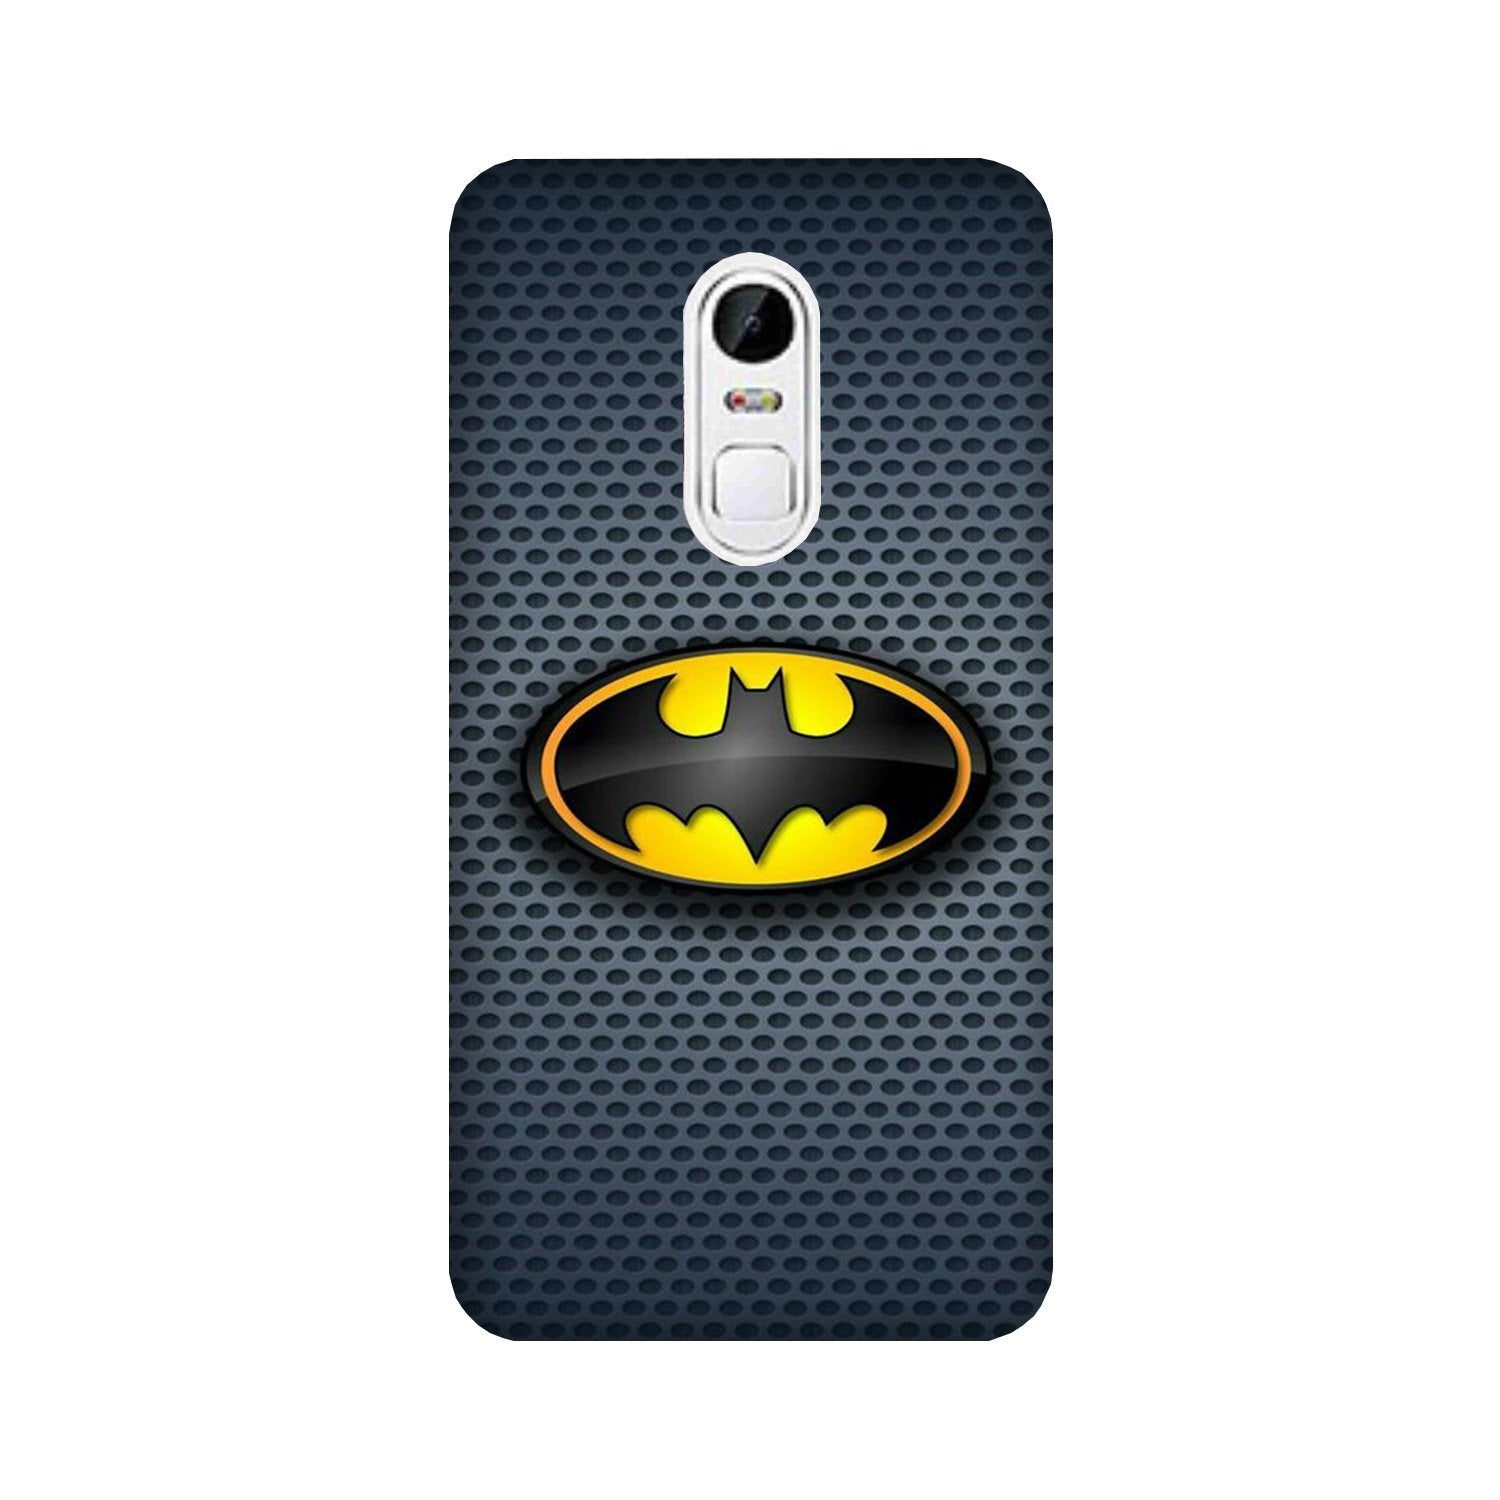 Batman Case for Lenovo Vibe X3 (Design No. 244)